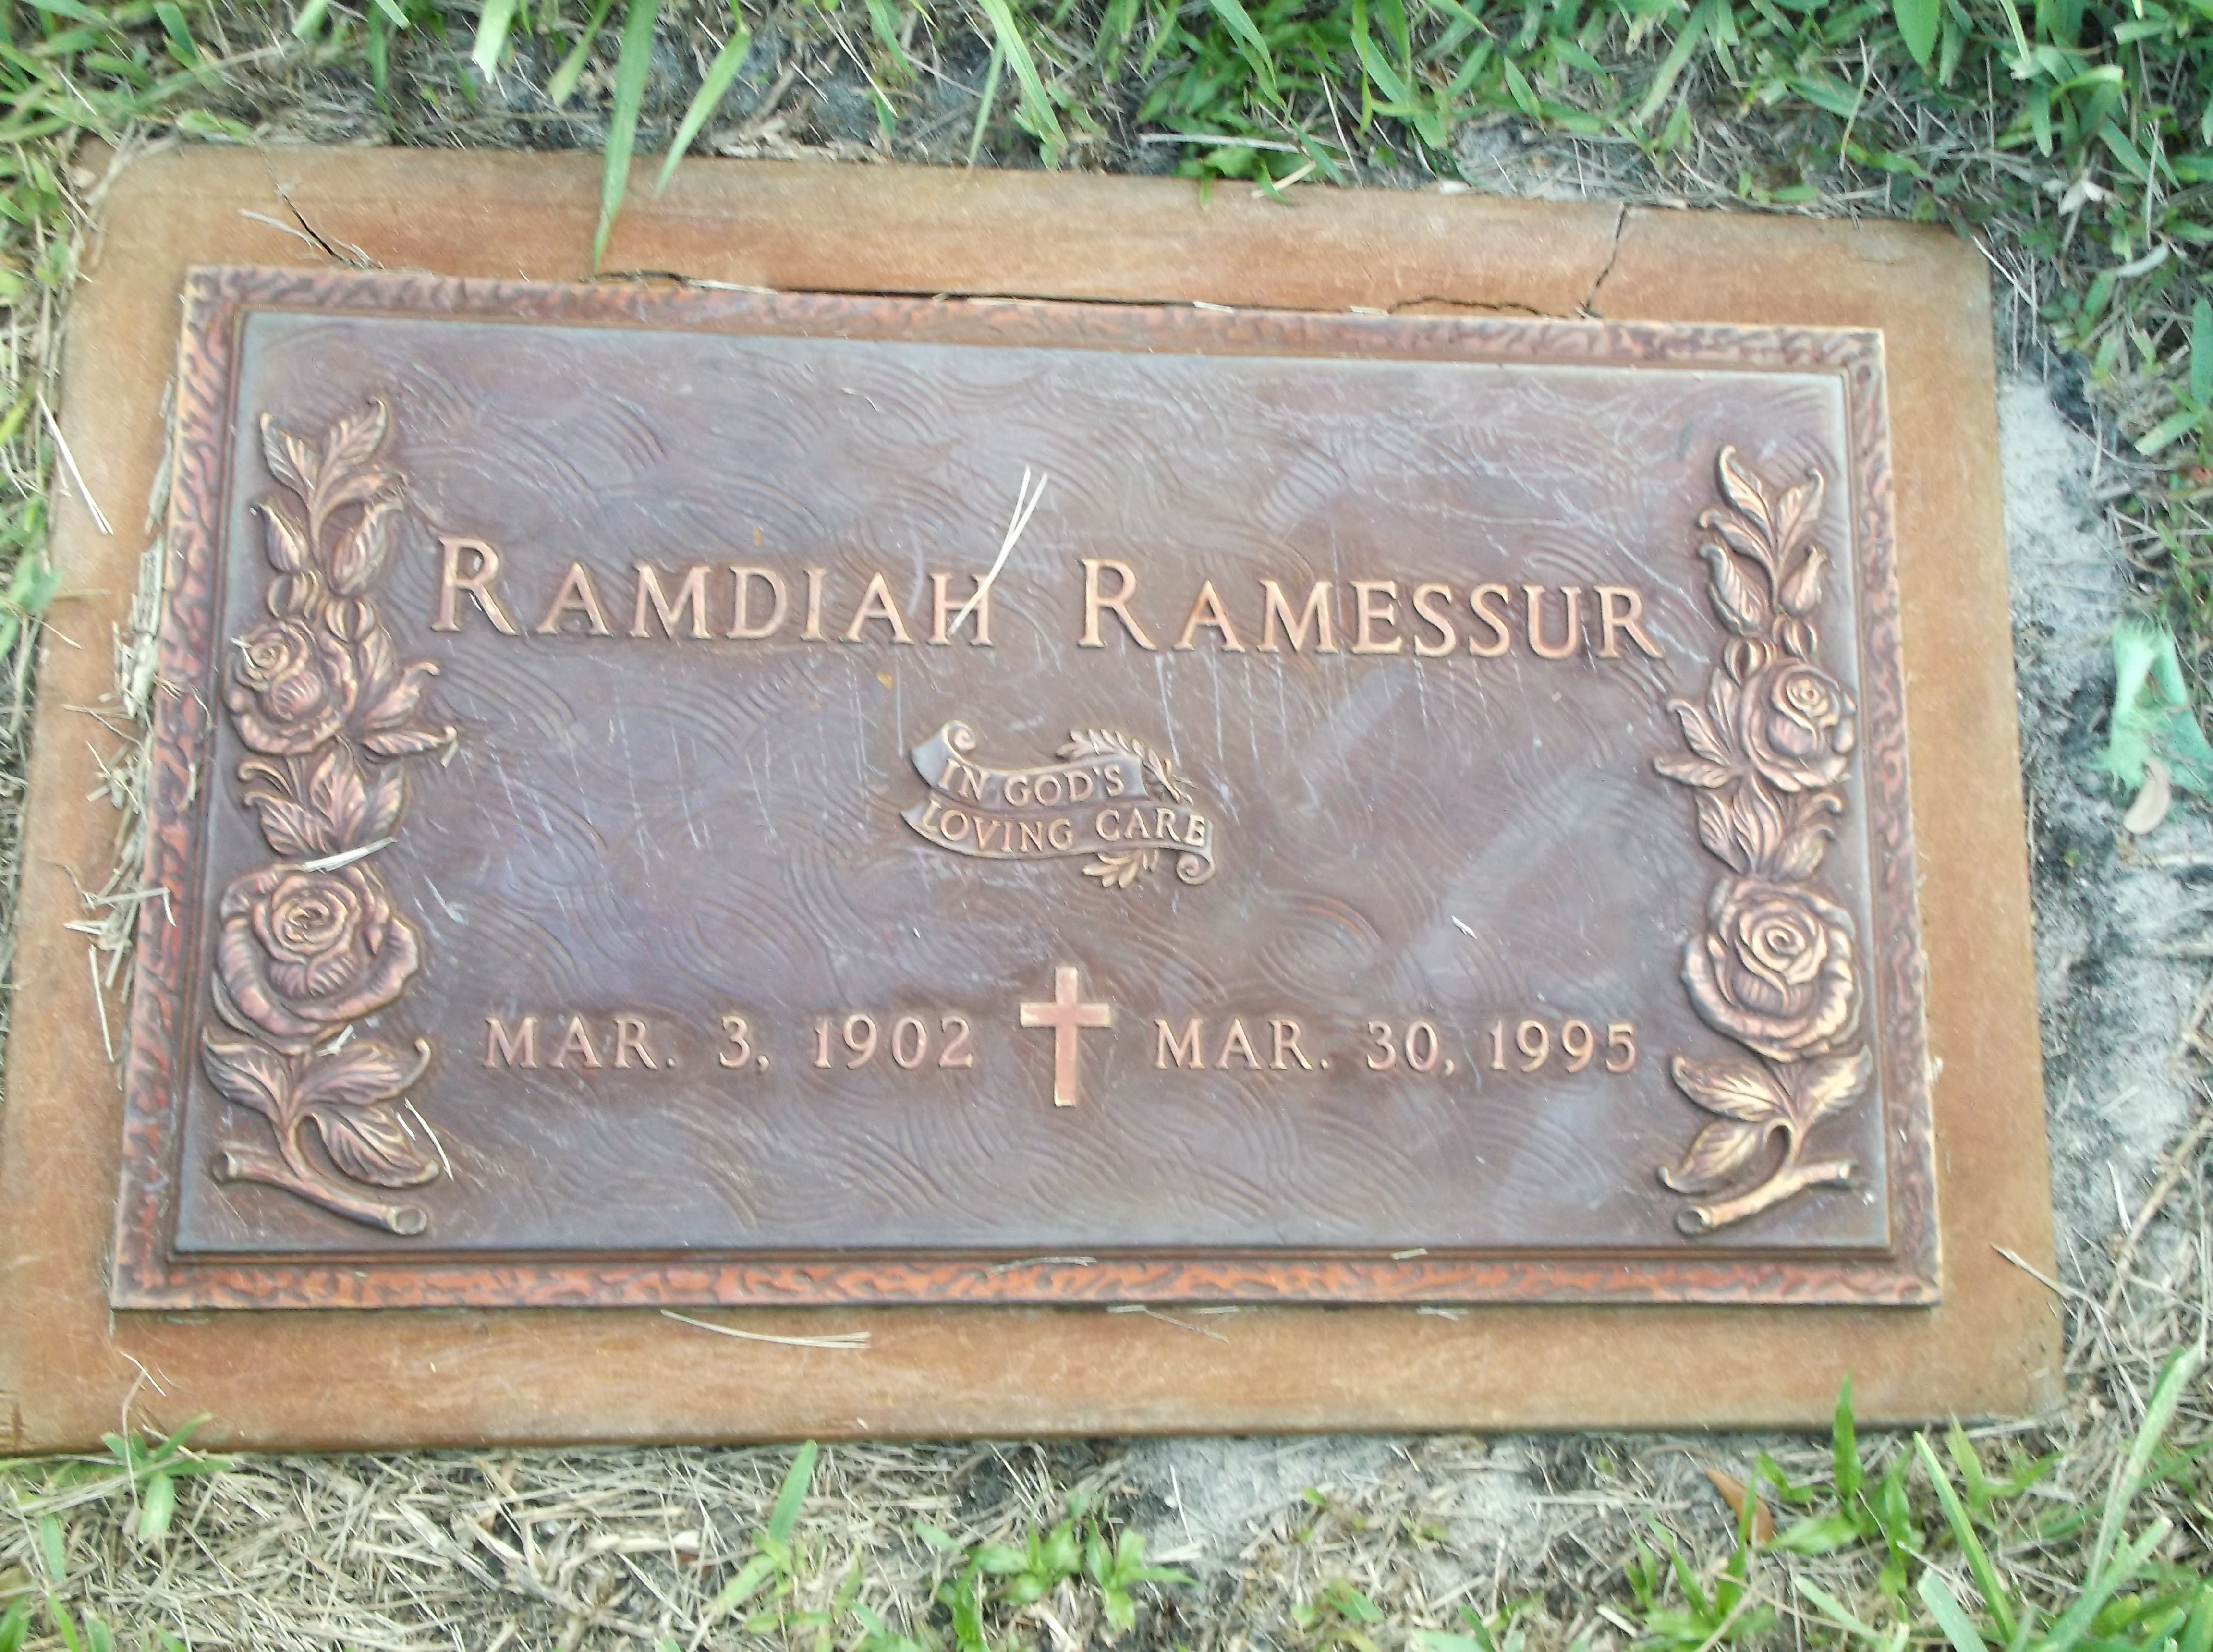 Ramdiah Ramessur